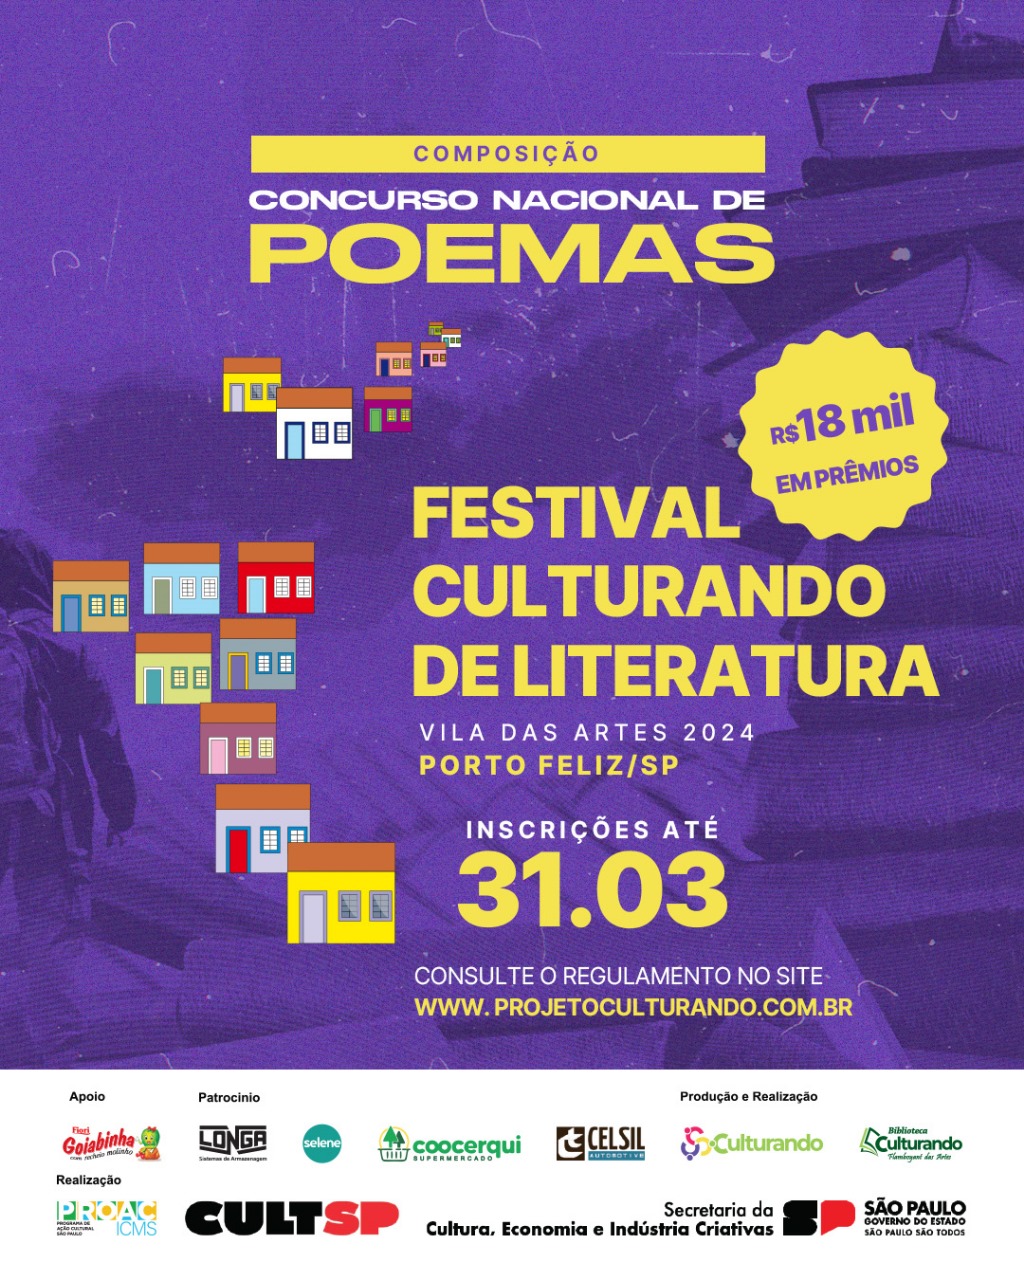 Concurso Nacional de Poemas. 'Festival Culturando de Literatura – Vila das Artes'